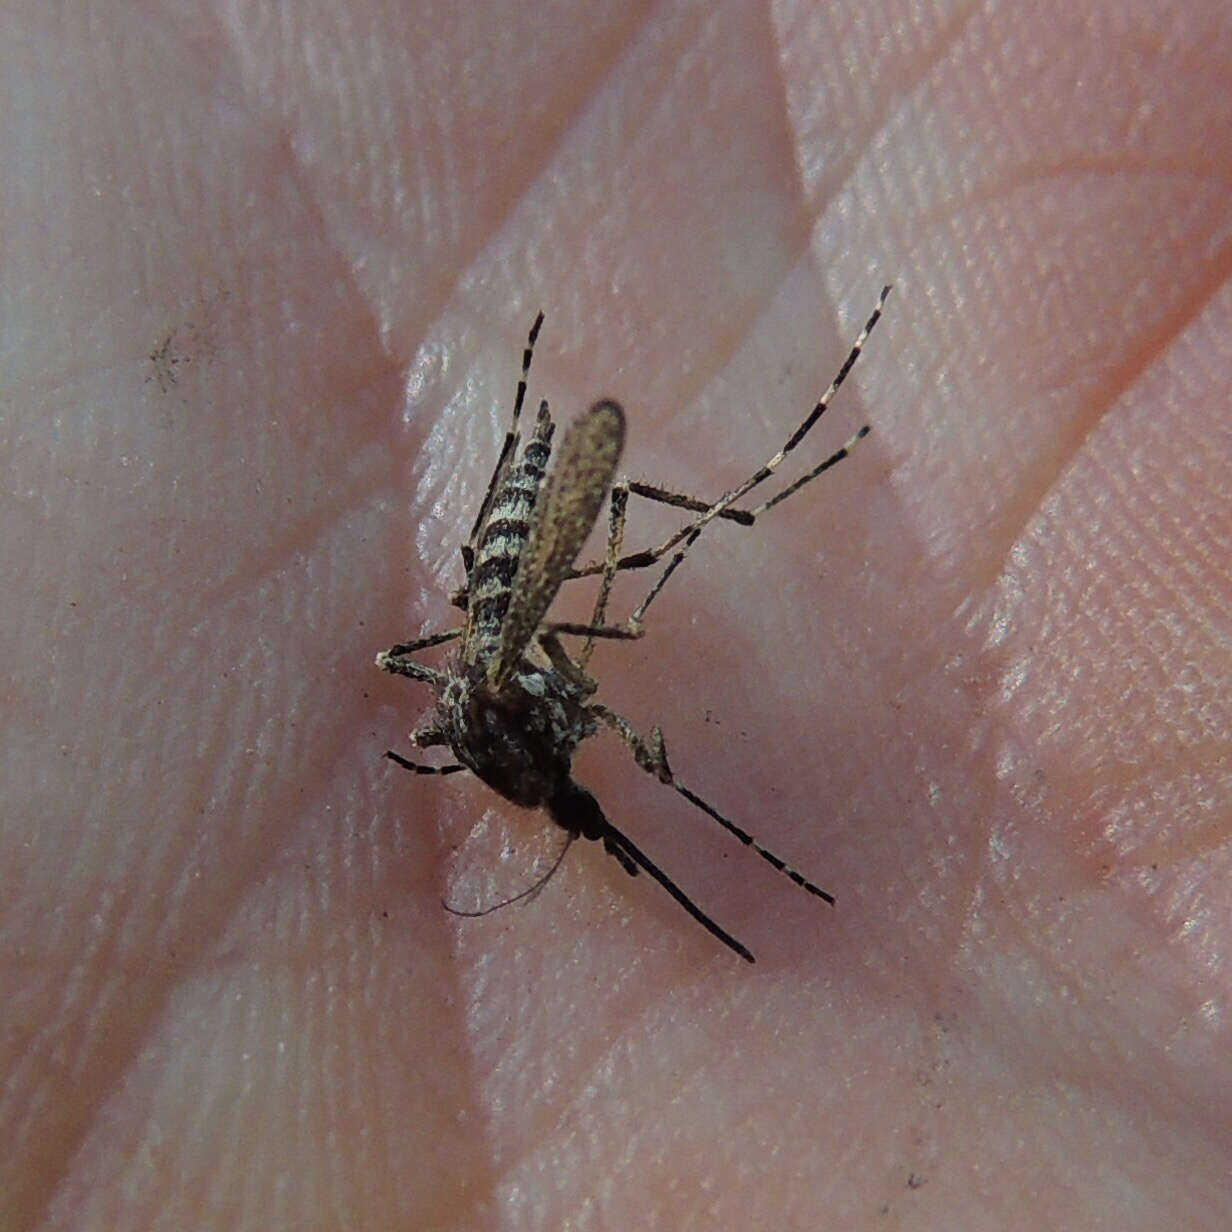 Image of Aedes grossbecki Dyar & Knab 1906